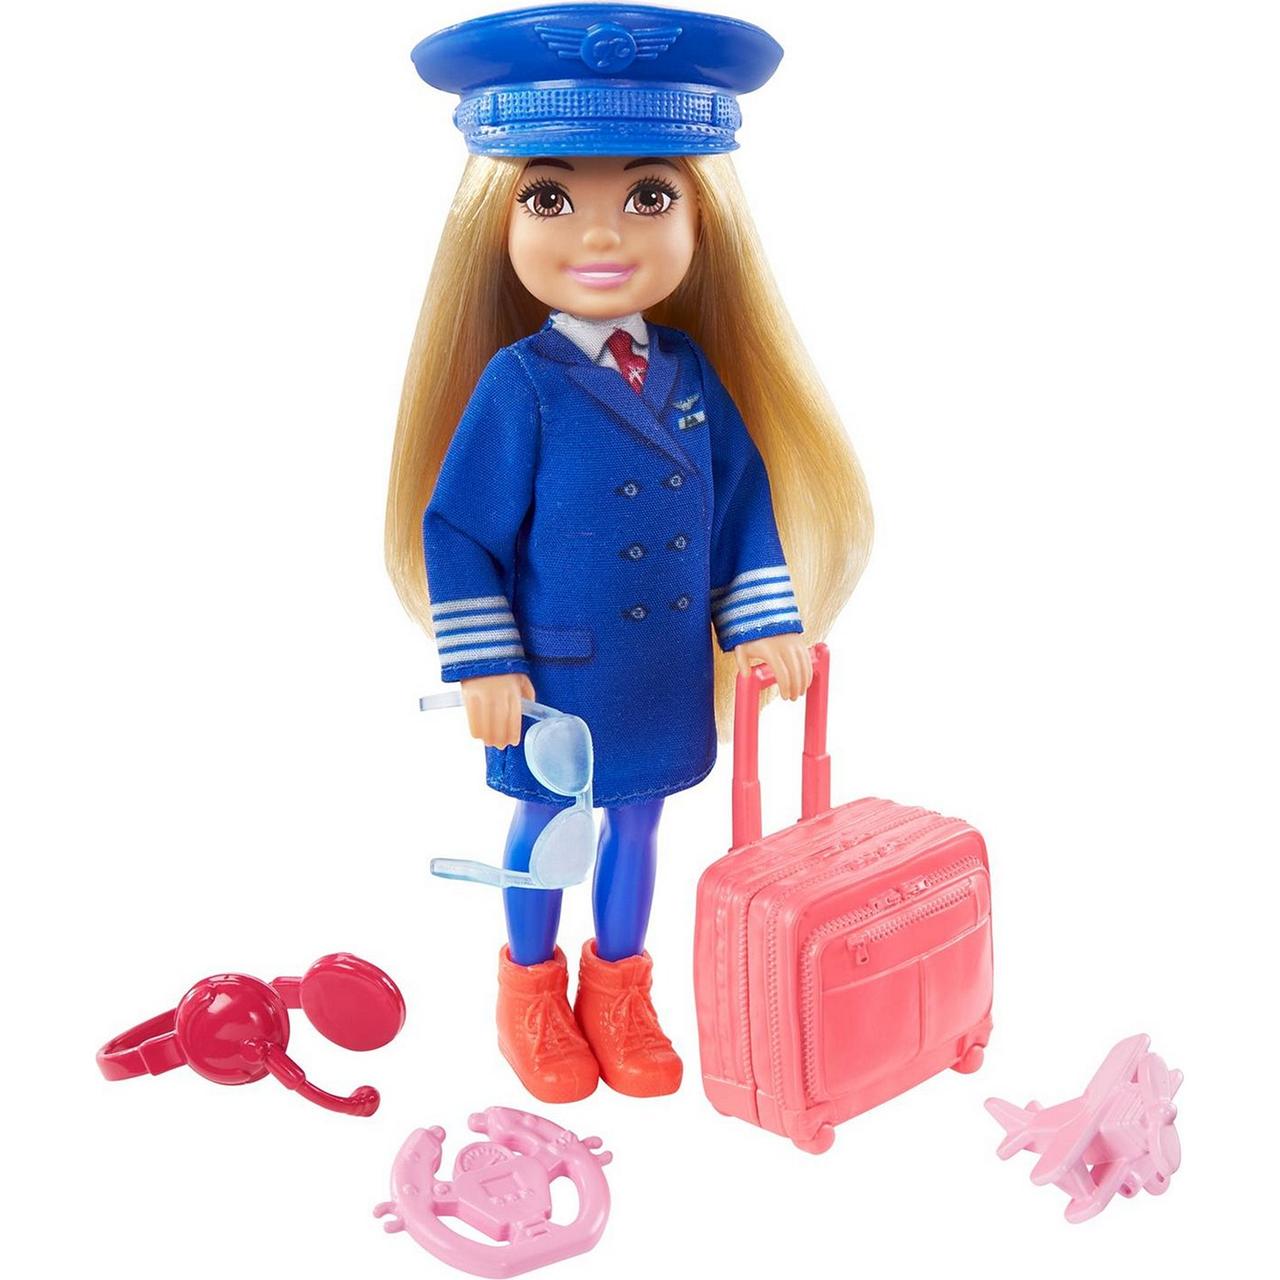 Набор Barbie Карьера Челси Пилот кукла + аксессуары